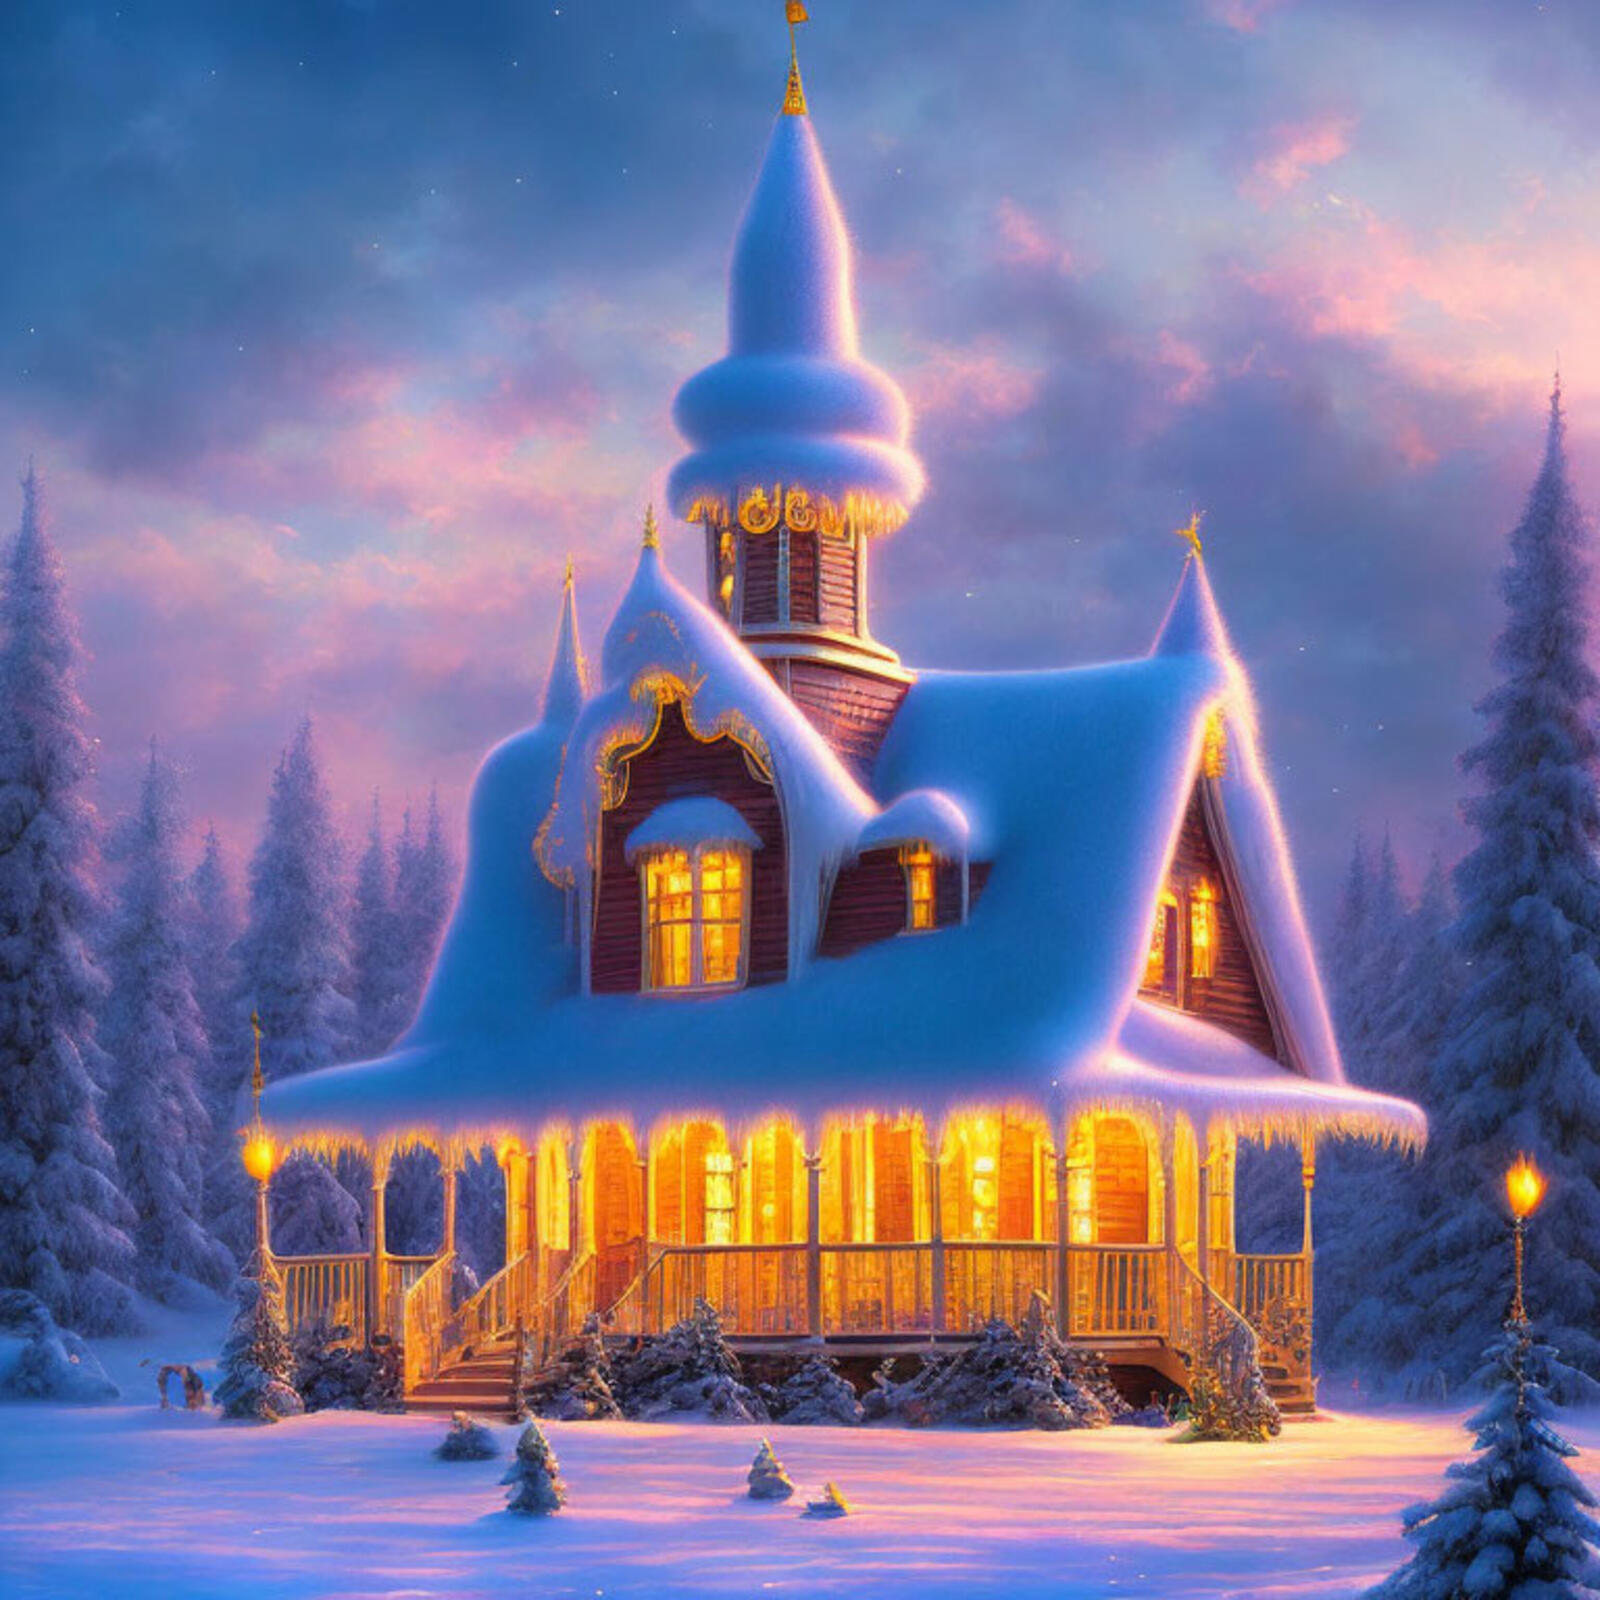 Бесплатное фото Покрытый снегом дом в новогоднюю ночь